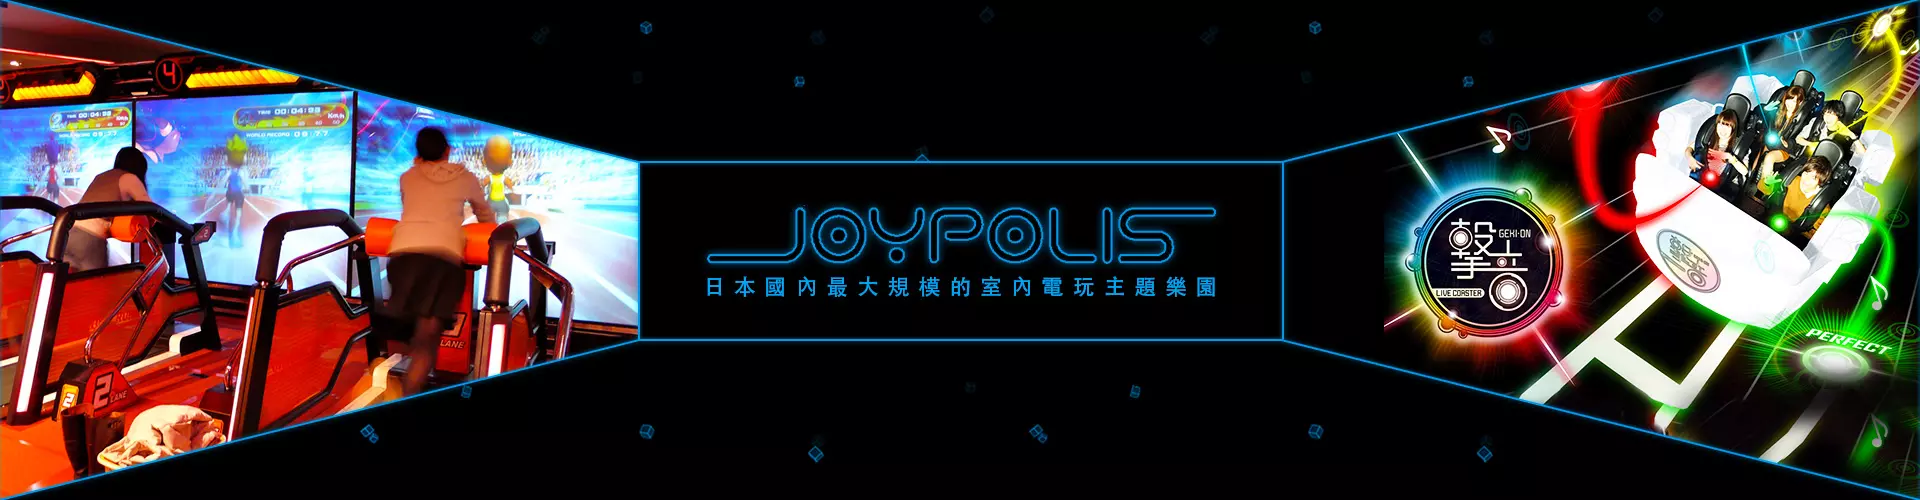 東京JOYPOLIS室內樂園 1天通行證 Tokyo Joypolis Passport